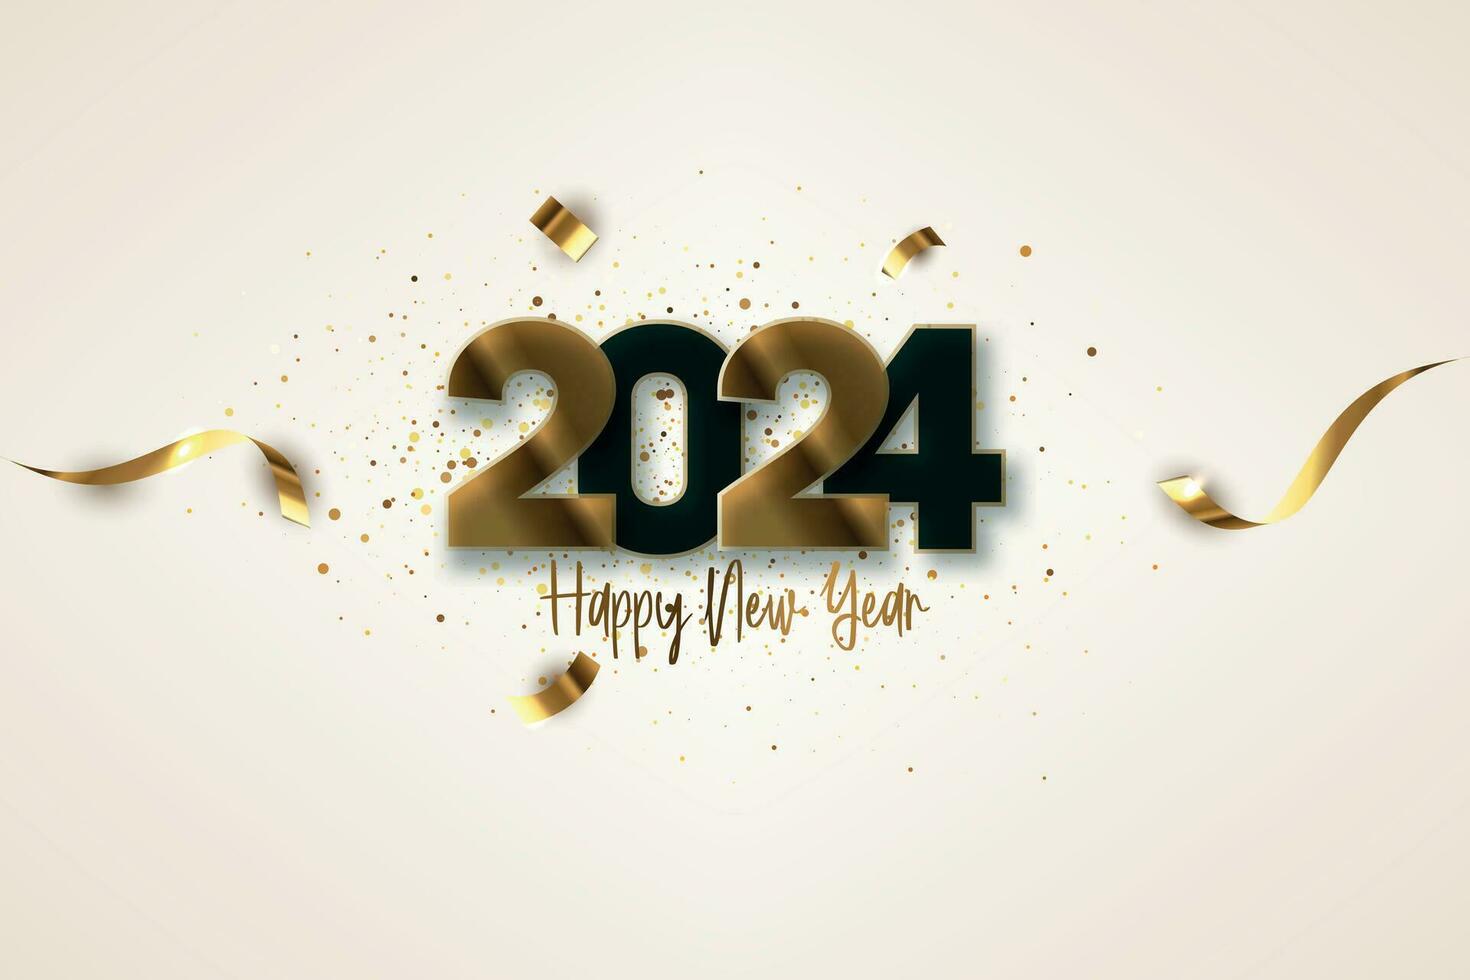 semplice e pulito design contento nuovo anno 2024. oro numeri per sfondo per striscioni, manifesti o calendario. vettore